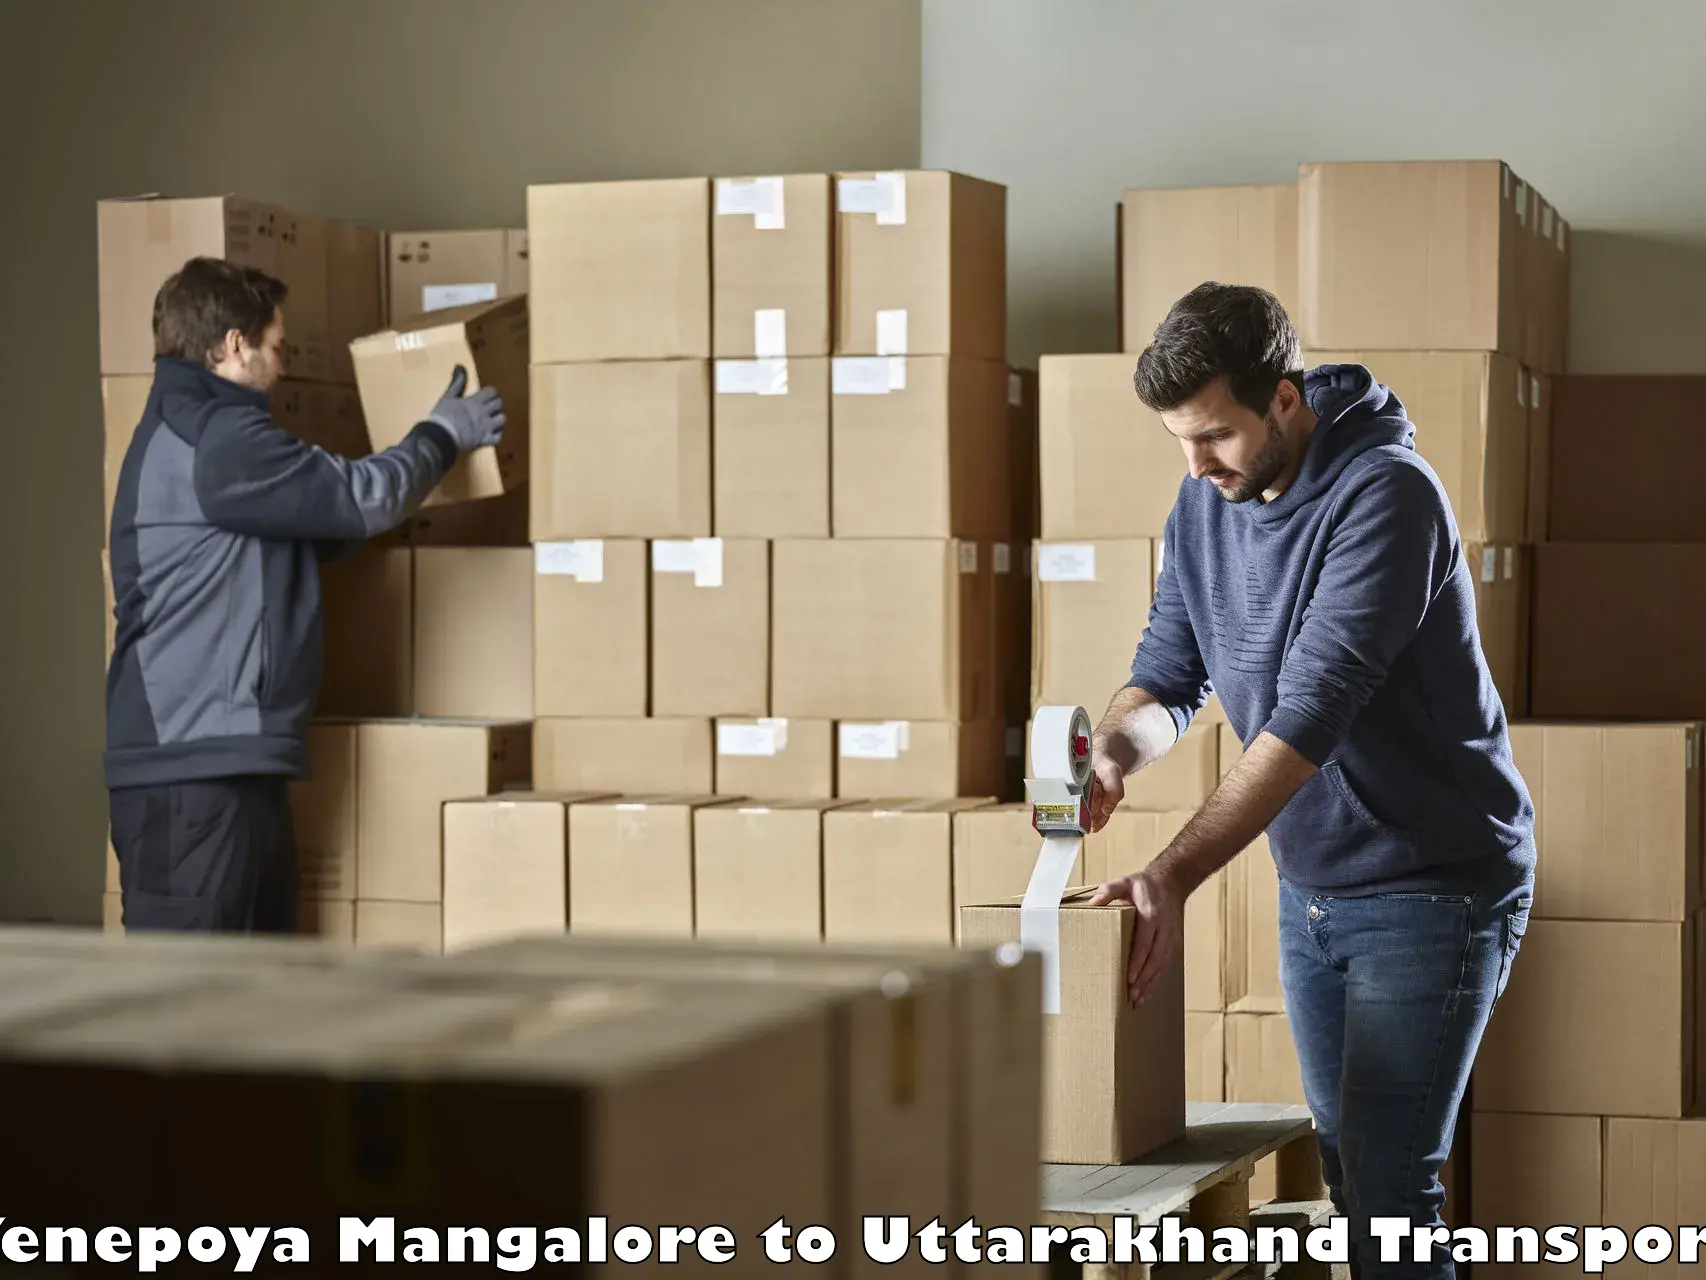 Luggage transport services in Yenepoya Mangalore to Doiwala